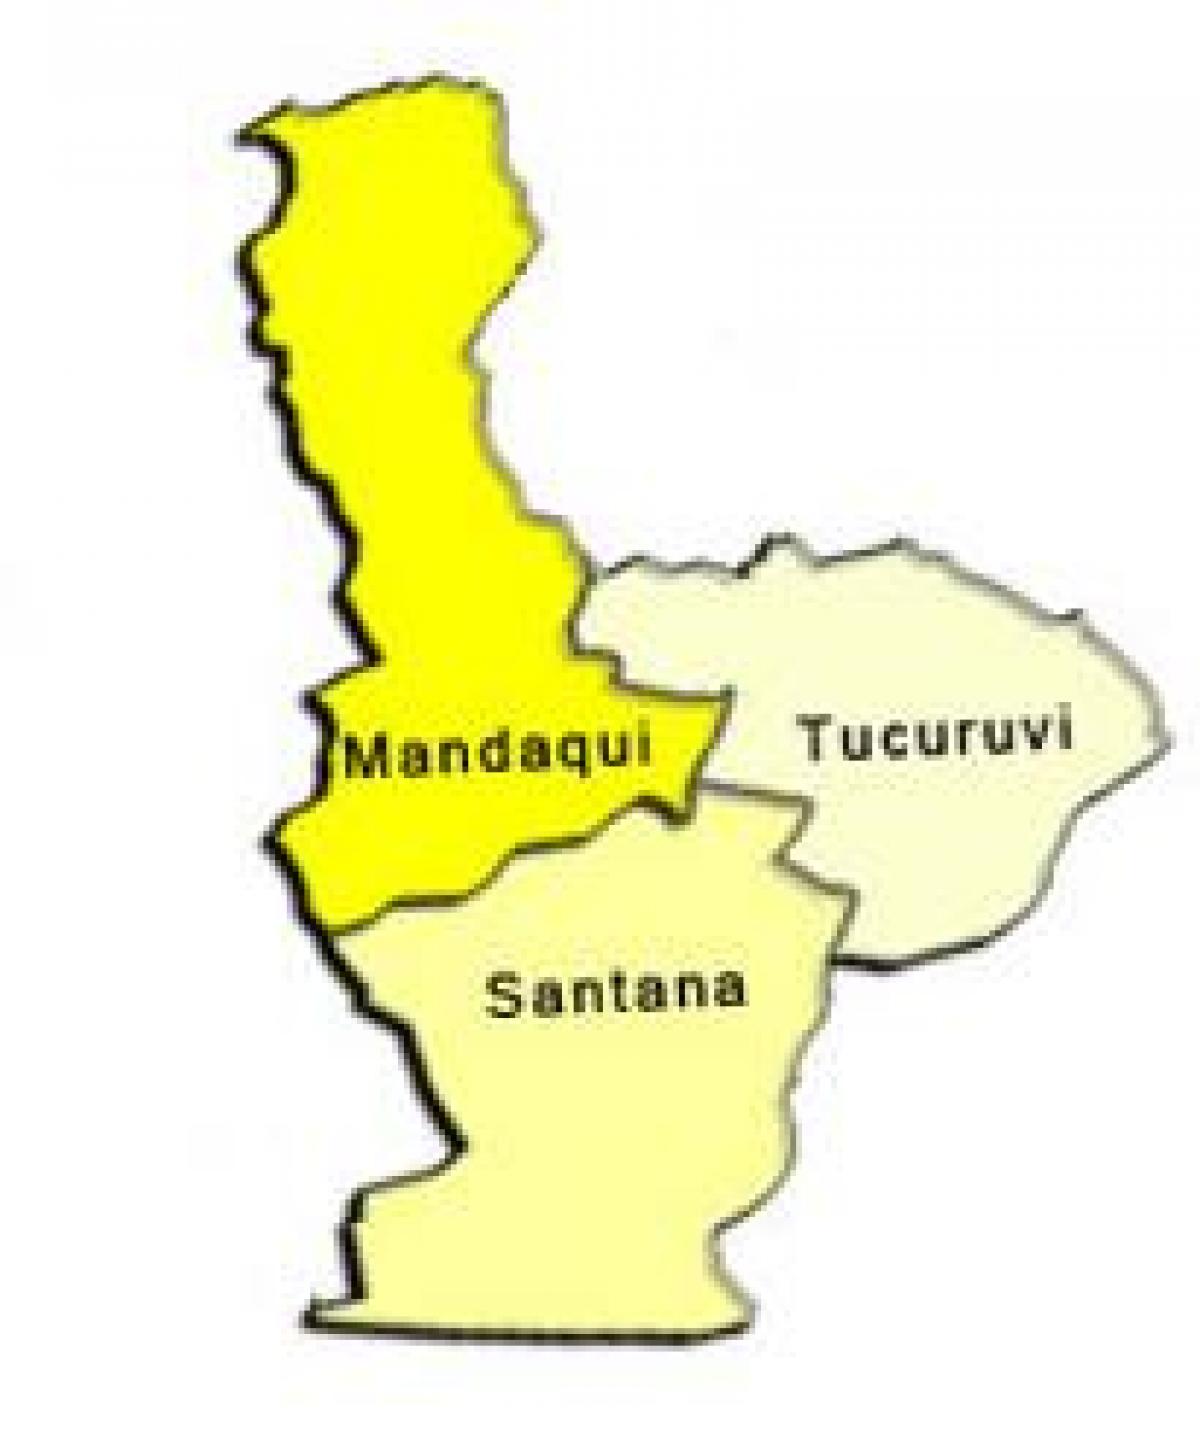 Žemėlapis Santana sub-prefektūros